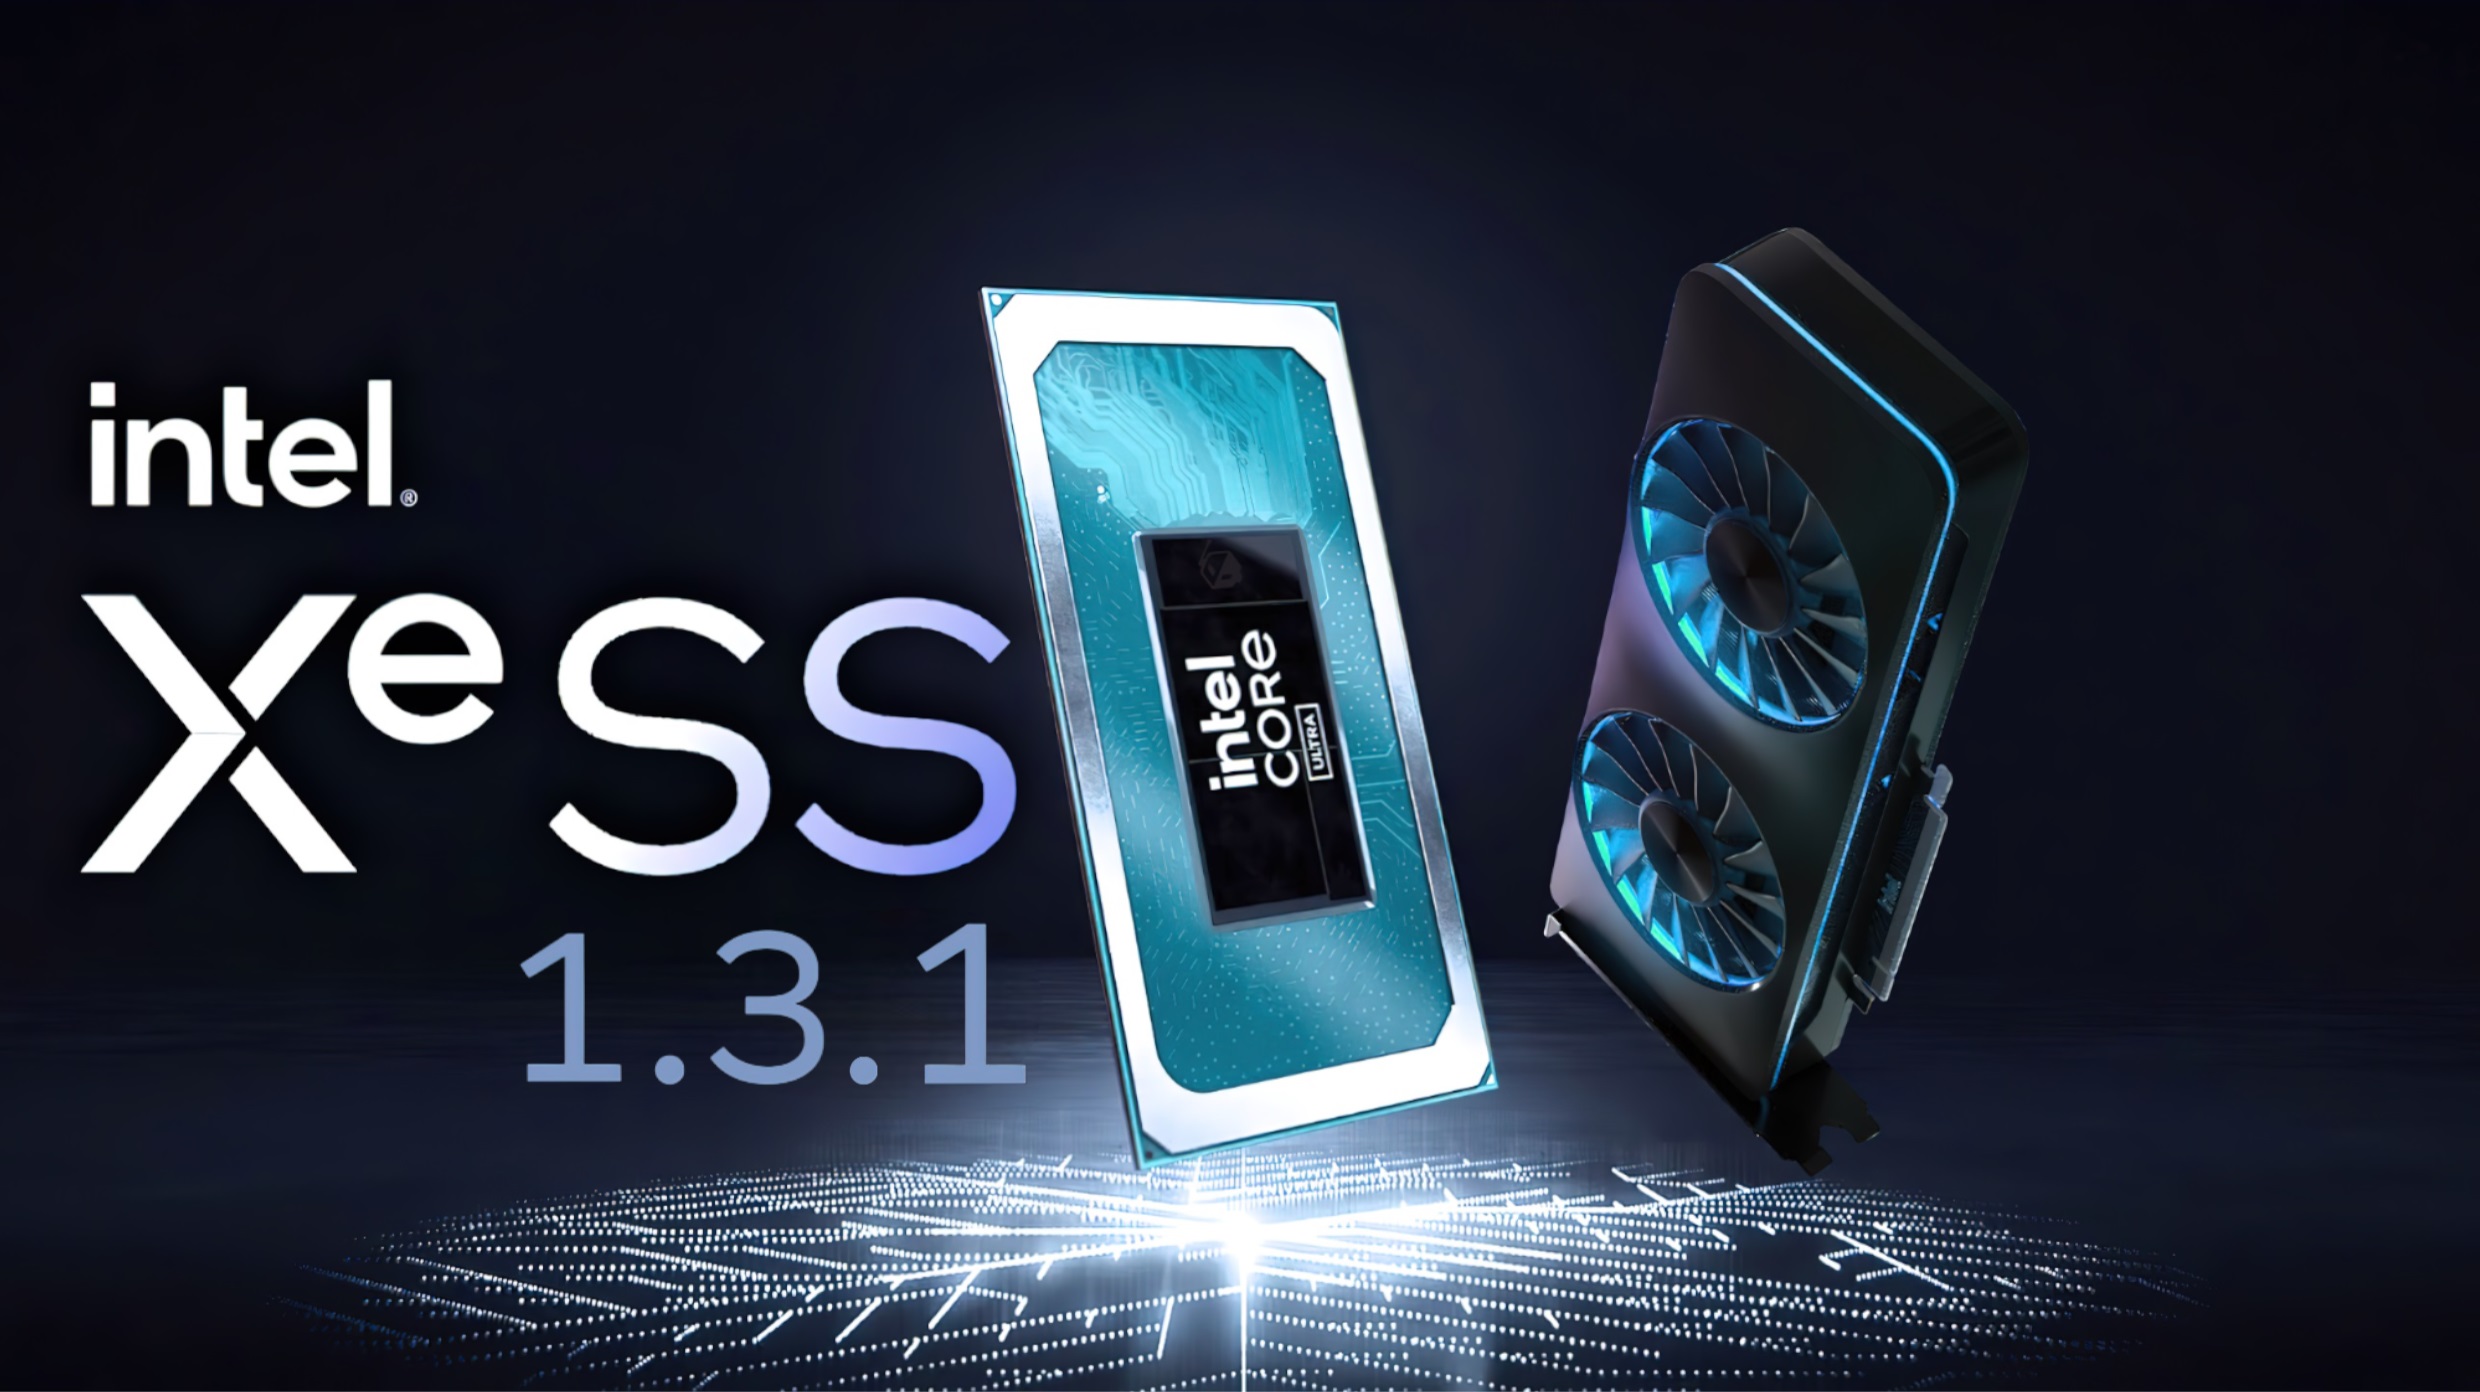 Intel XeSS 1.3.1 SDK اکنون در دسترس است: شامل رفع اشکال و بهبودهای مختلف پایداری